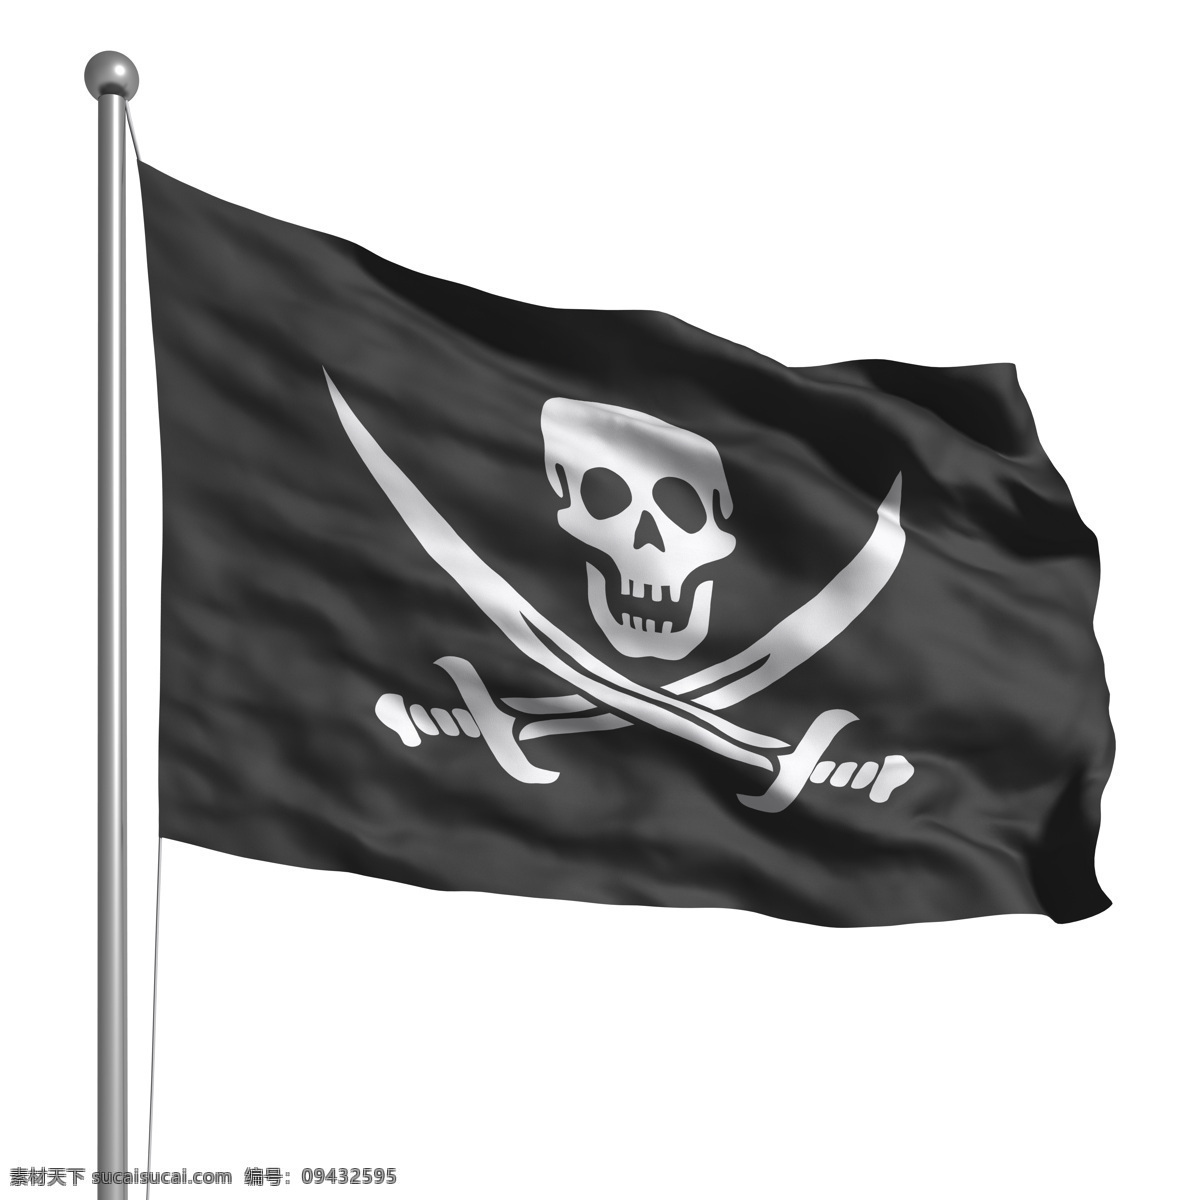 海盗 旗帜 素材图片 骷髅头 刀 旗子 海盗旗 生活百科 其他类别 现代科技